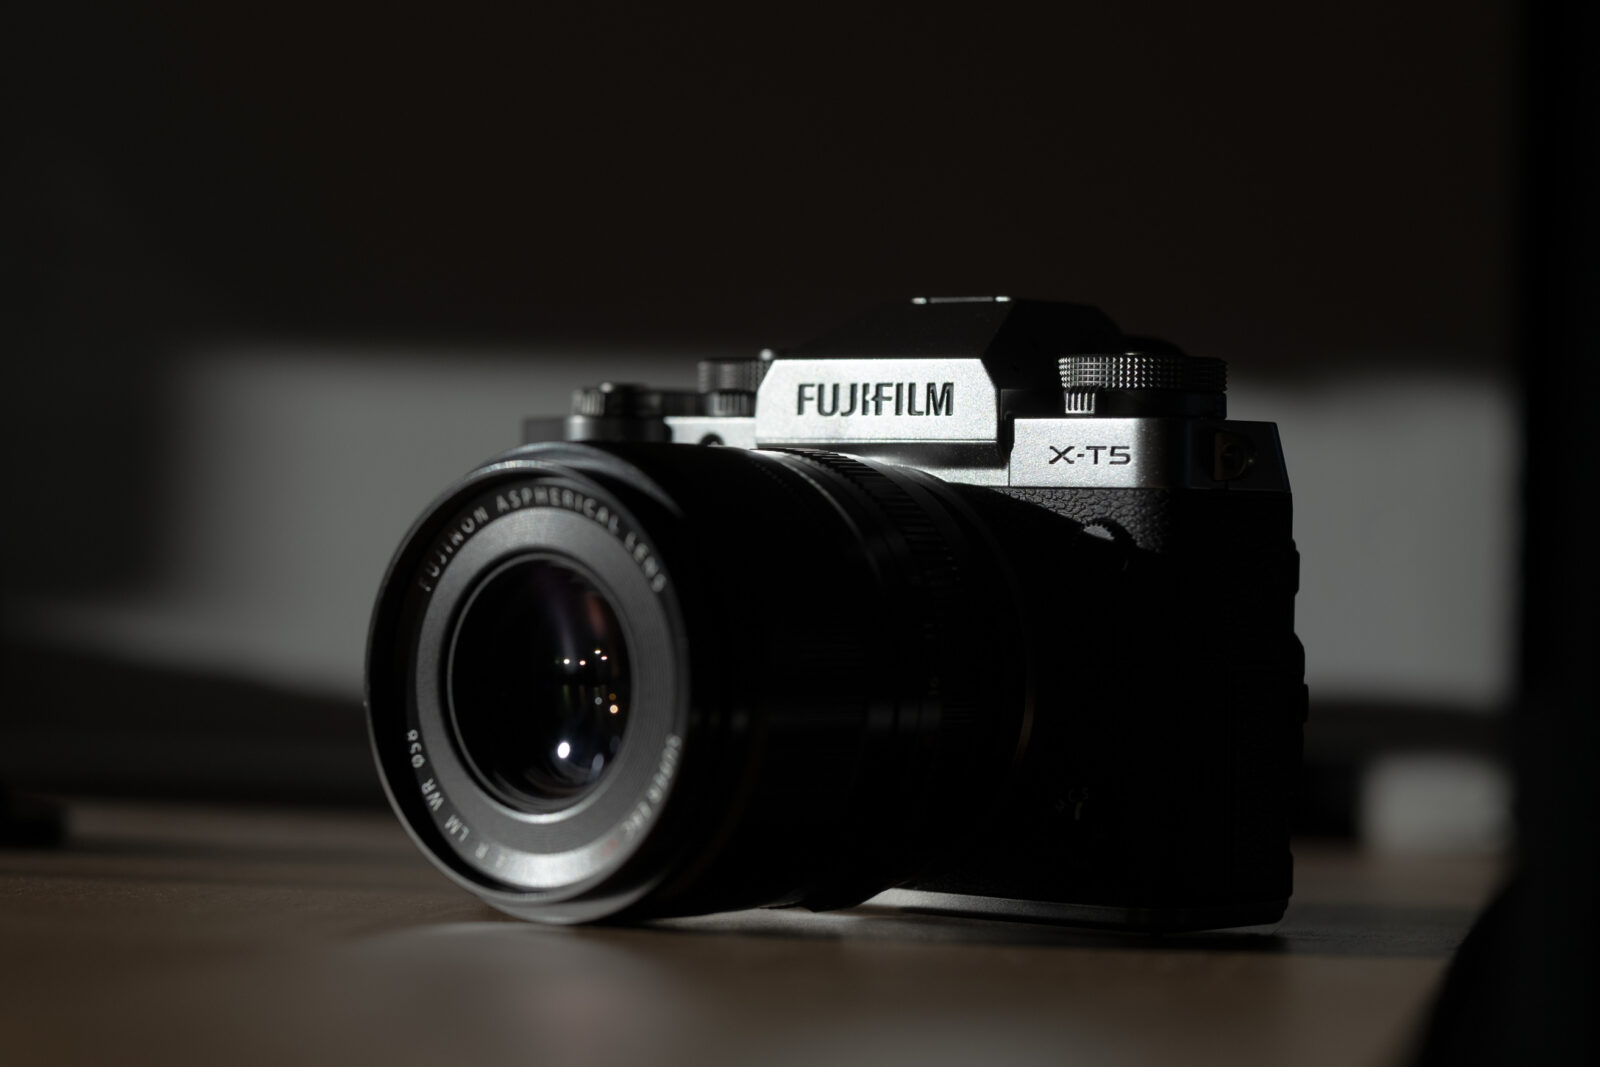 ฟูจิฟิล์ม ประเทศไทย เปิดตัวกล้อง FUJIFILM X T5 | FUJIFILM X-T5 | ฟูจิฟิล์มเปิดตัวกล้อง FUJIFILM X-T5 และเลนส์ Fujinon XF30mm F2.8 Macro